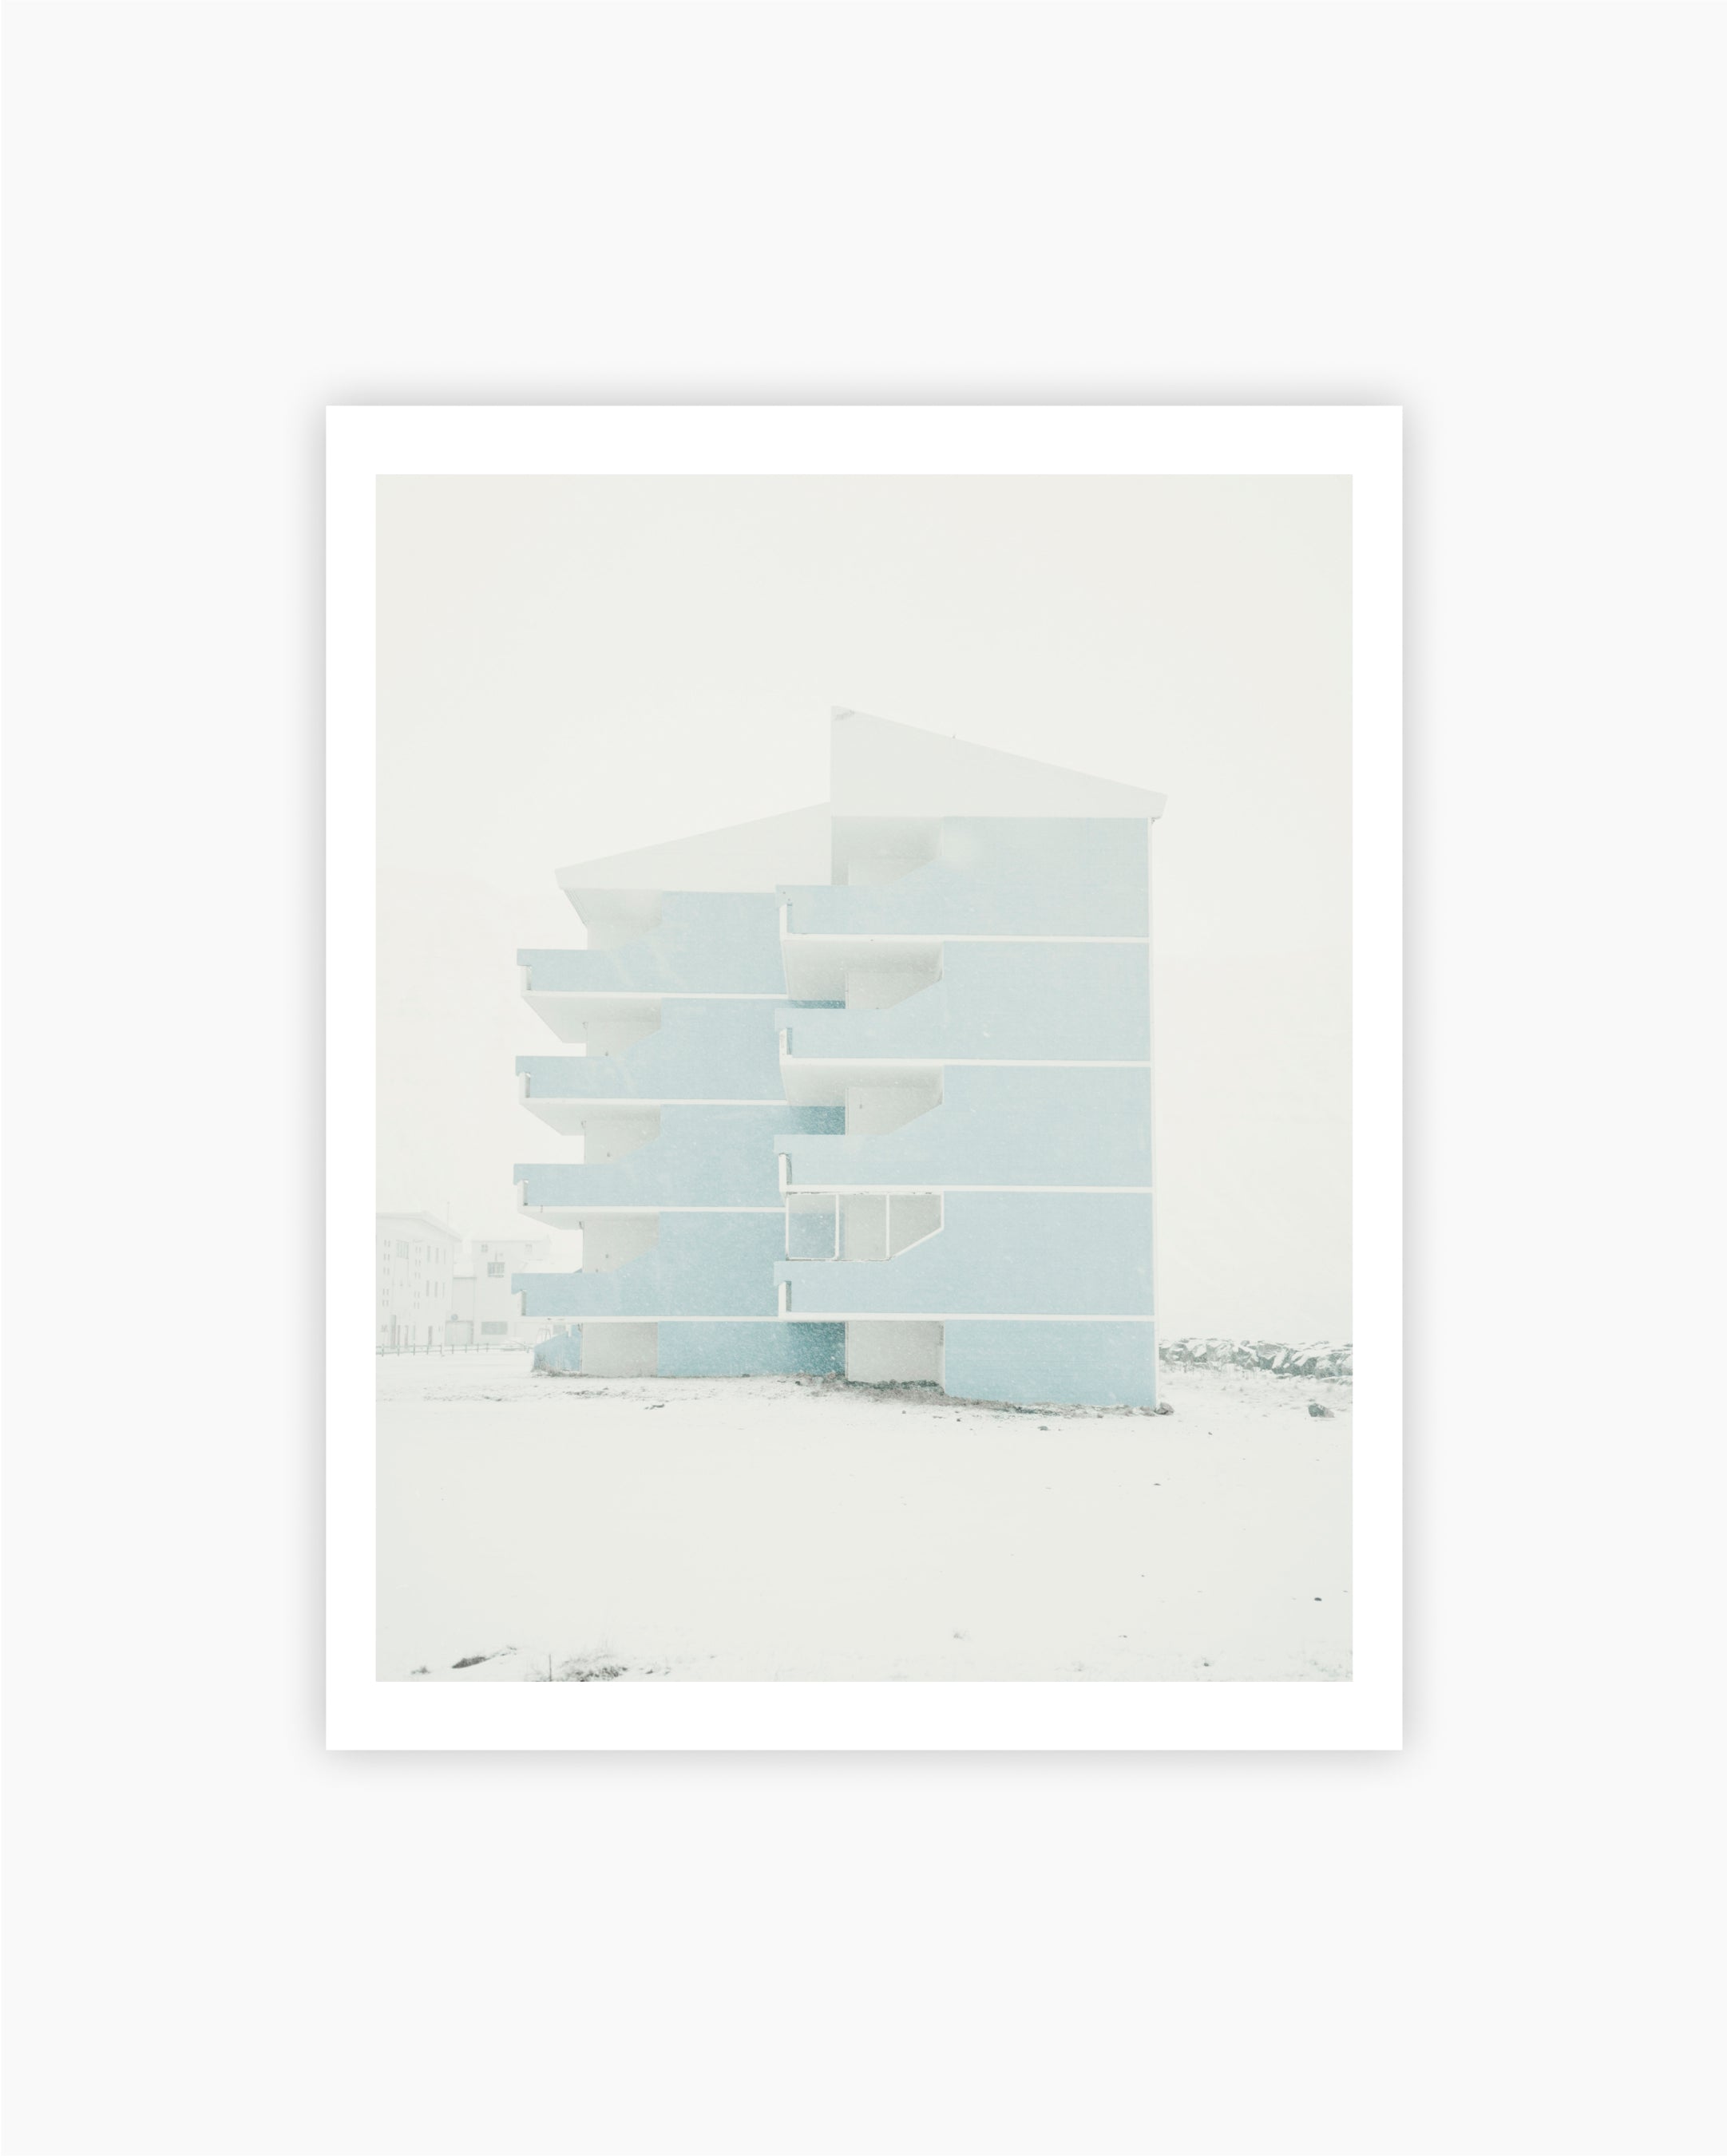 Magnum Editions: Housing Block. Isafjordur, Iceland. 2011